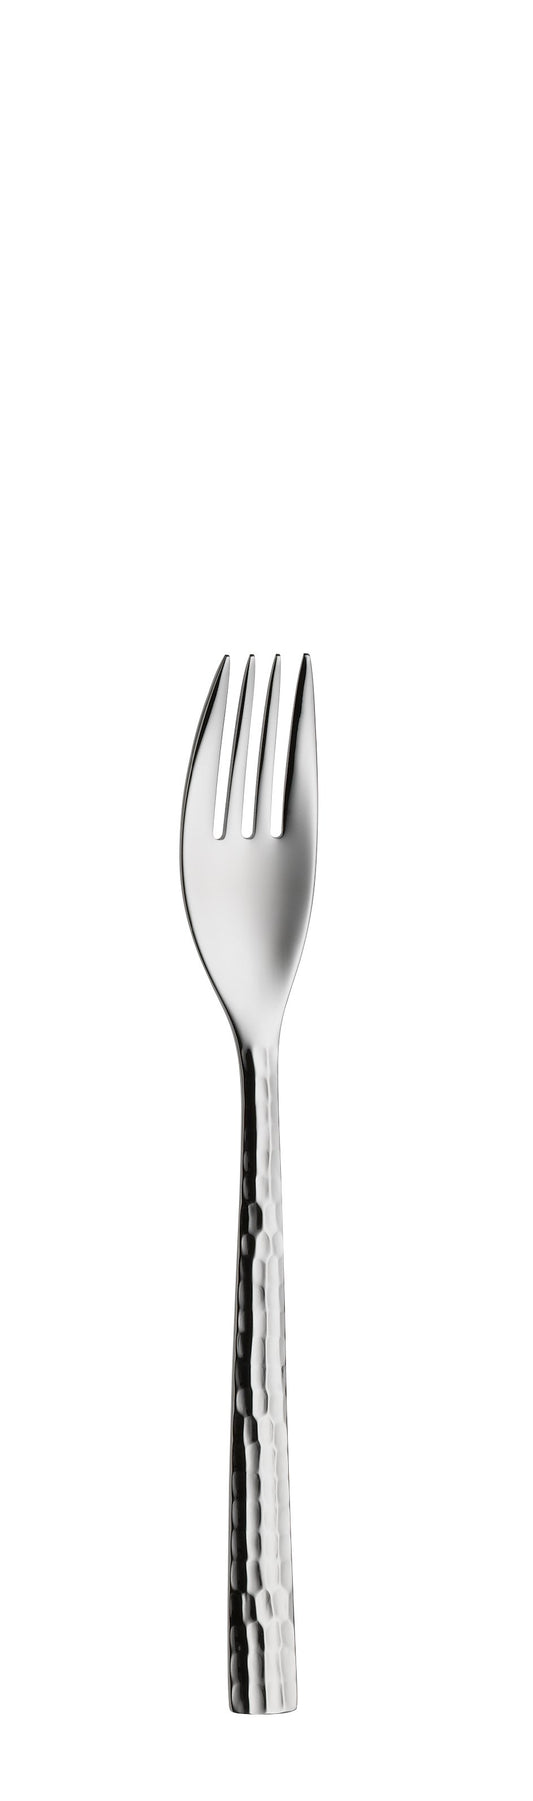 Dessert fork 4 prongs LENISTA 158mm